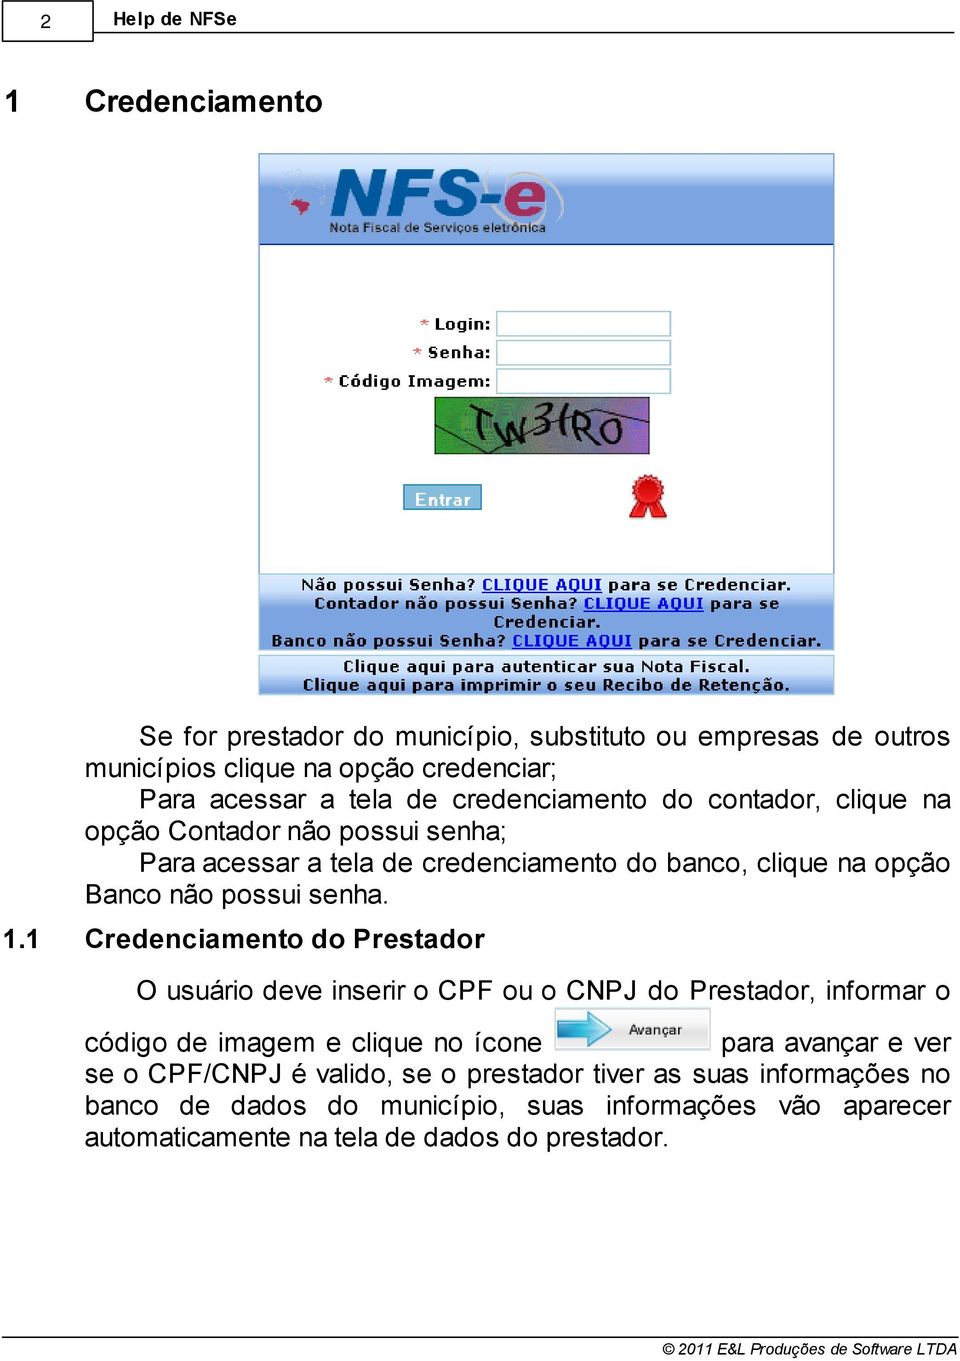 11 Credenciamento do Prestador O usuário deve inserir o CPF ou o CNPJ do Prestador, informar o código de imagem e clique no ícone para avançar e ver se o